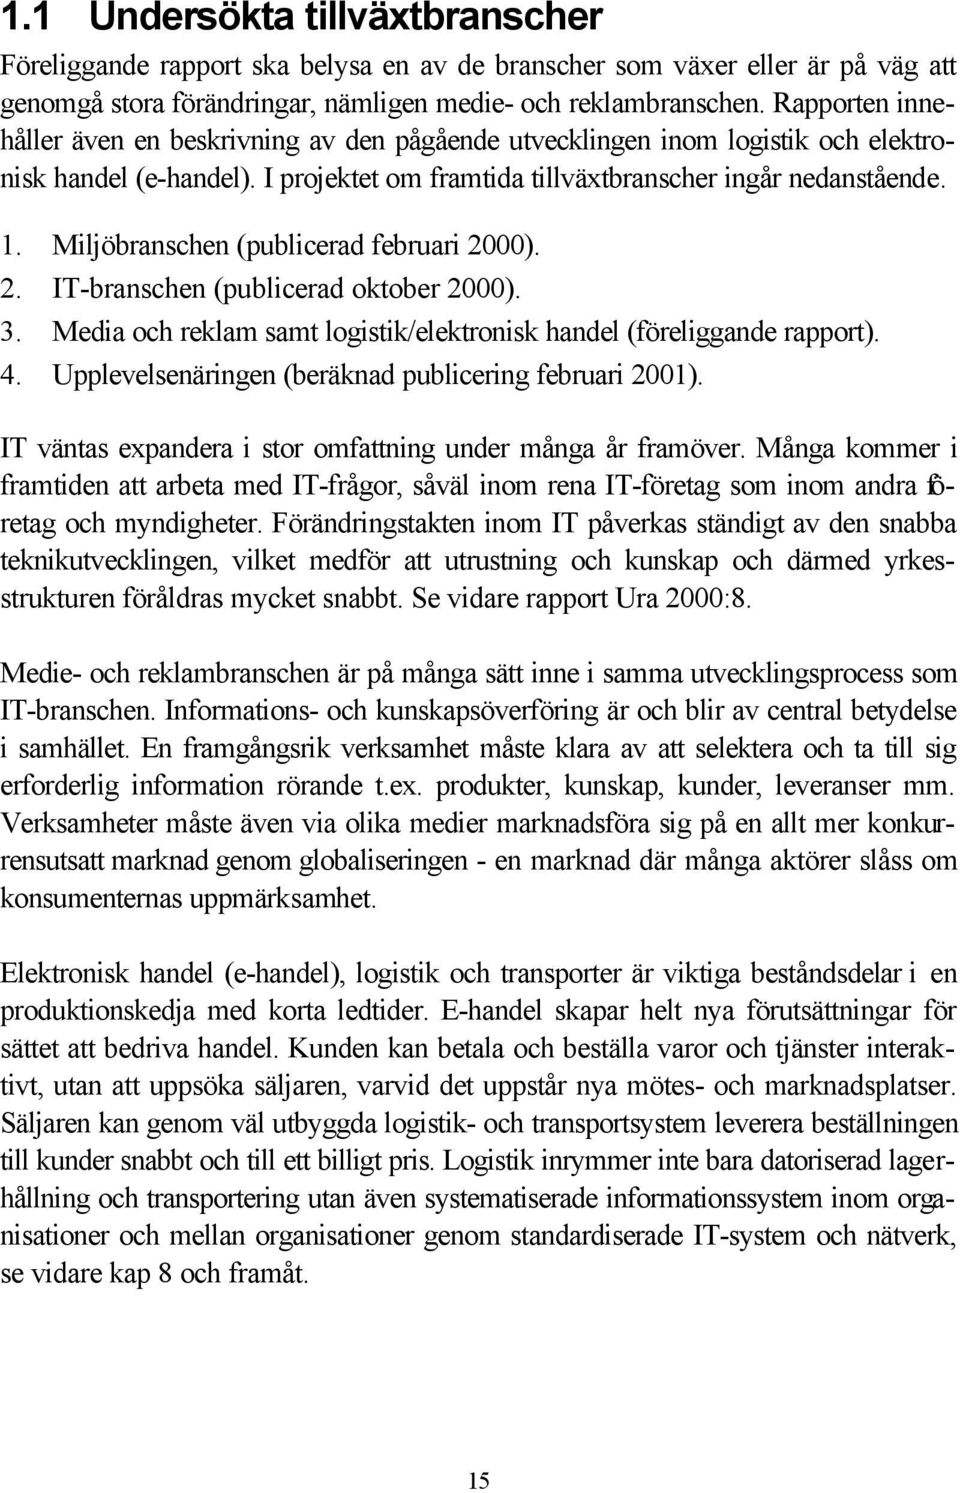 Miljöbranschen (publicerad februari 2000). 2. IT-branschen (publicerad oktober 2000). 3. Media och reklam samt logistik/elektronisk handel (föreliggande rapport). 4.